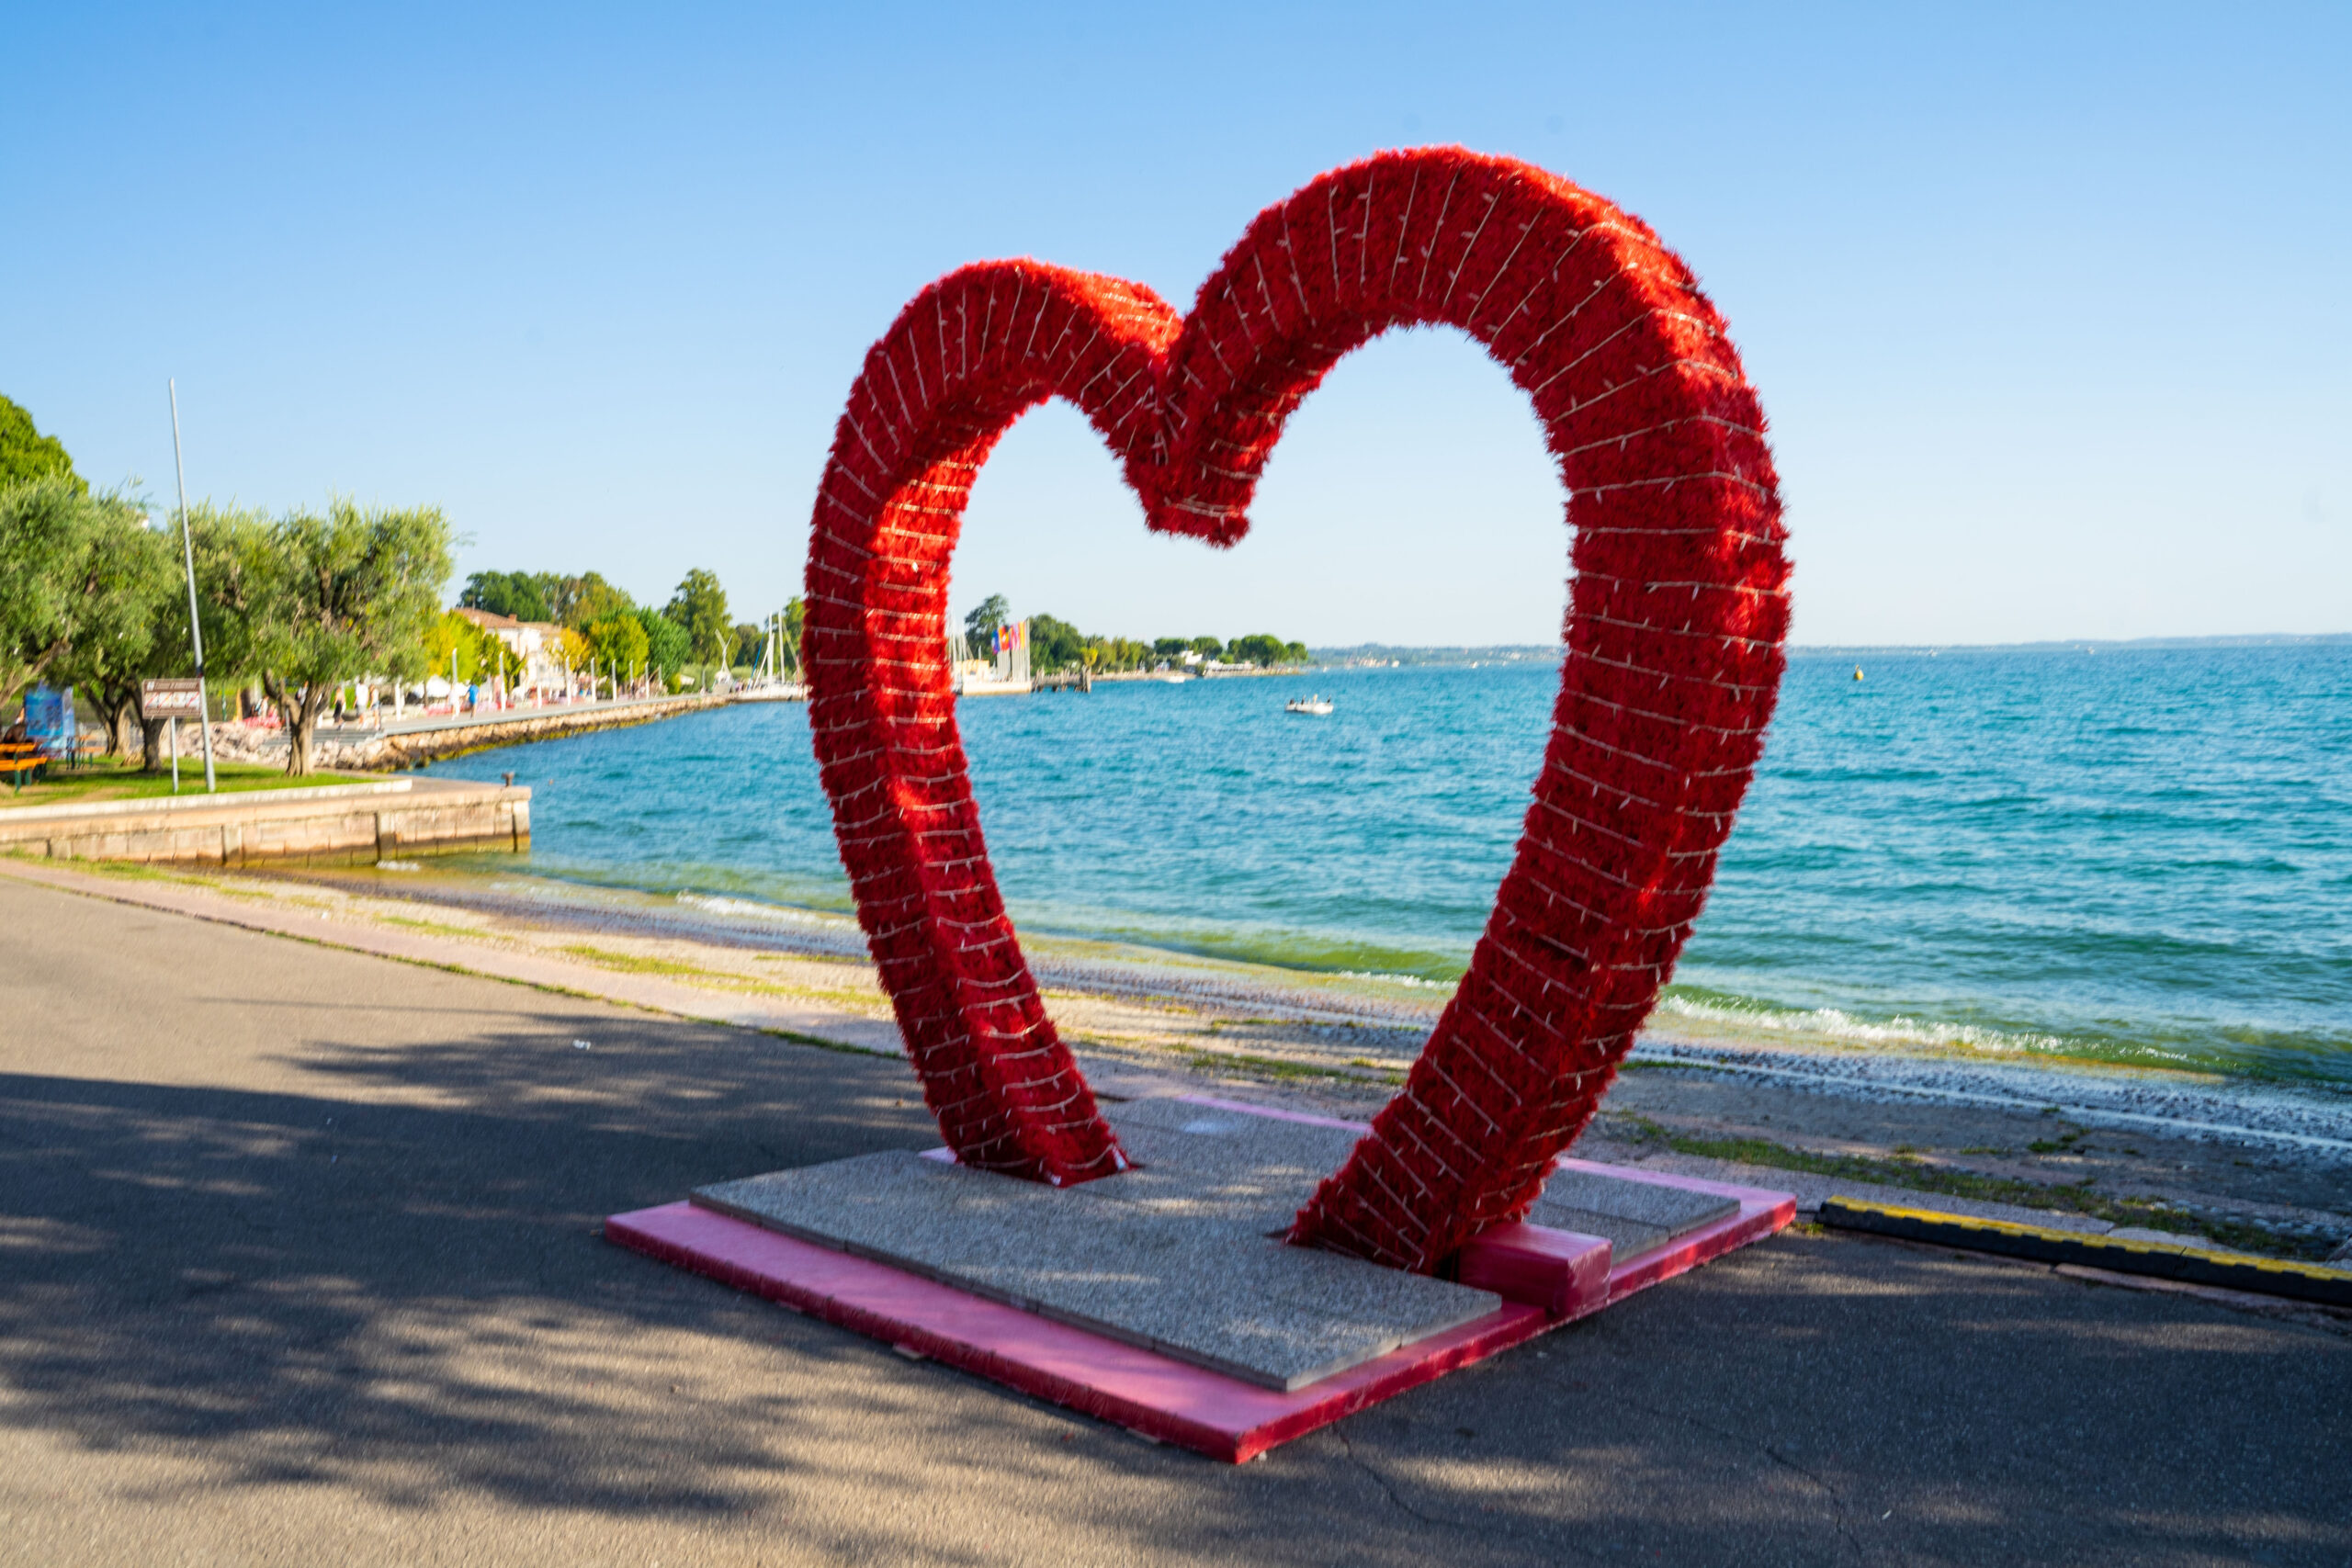 Chiude la settimana dell’amore sul Lago di Garda e già si pensa a San Valentino